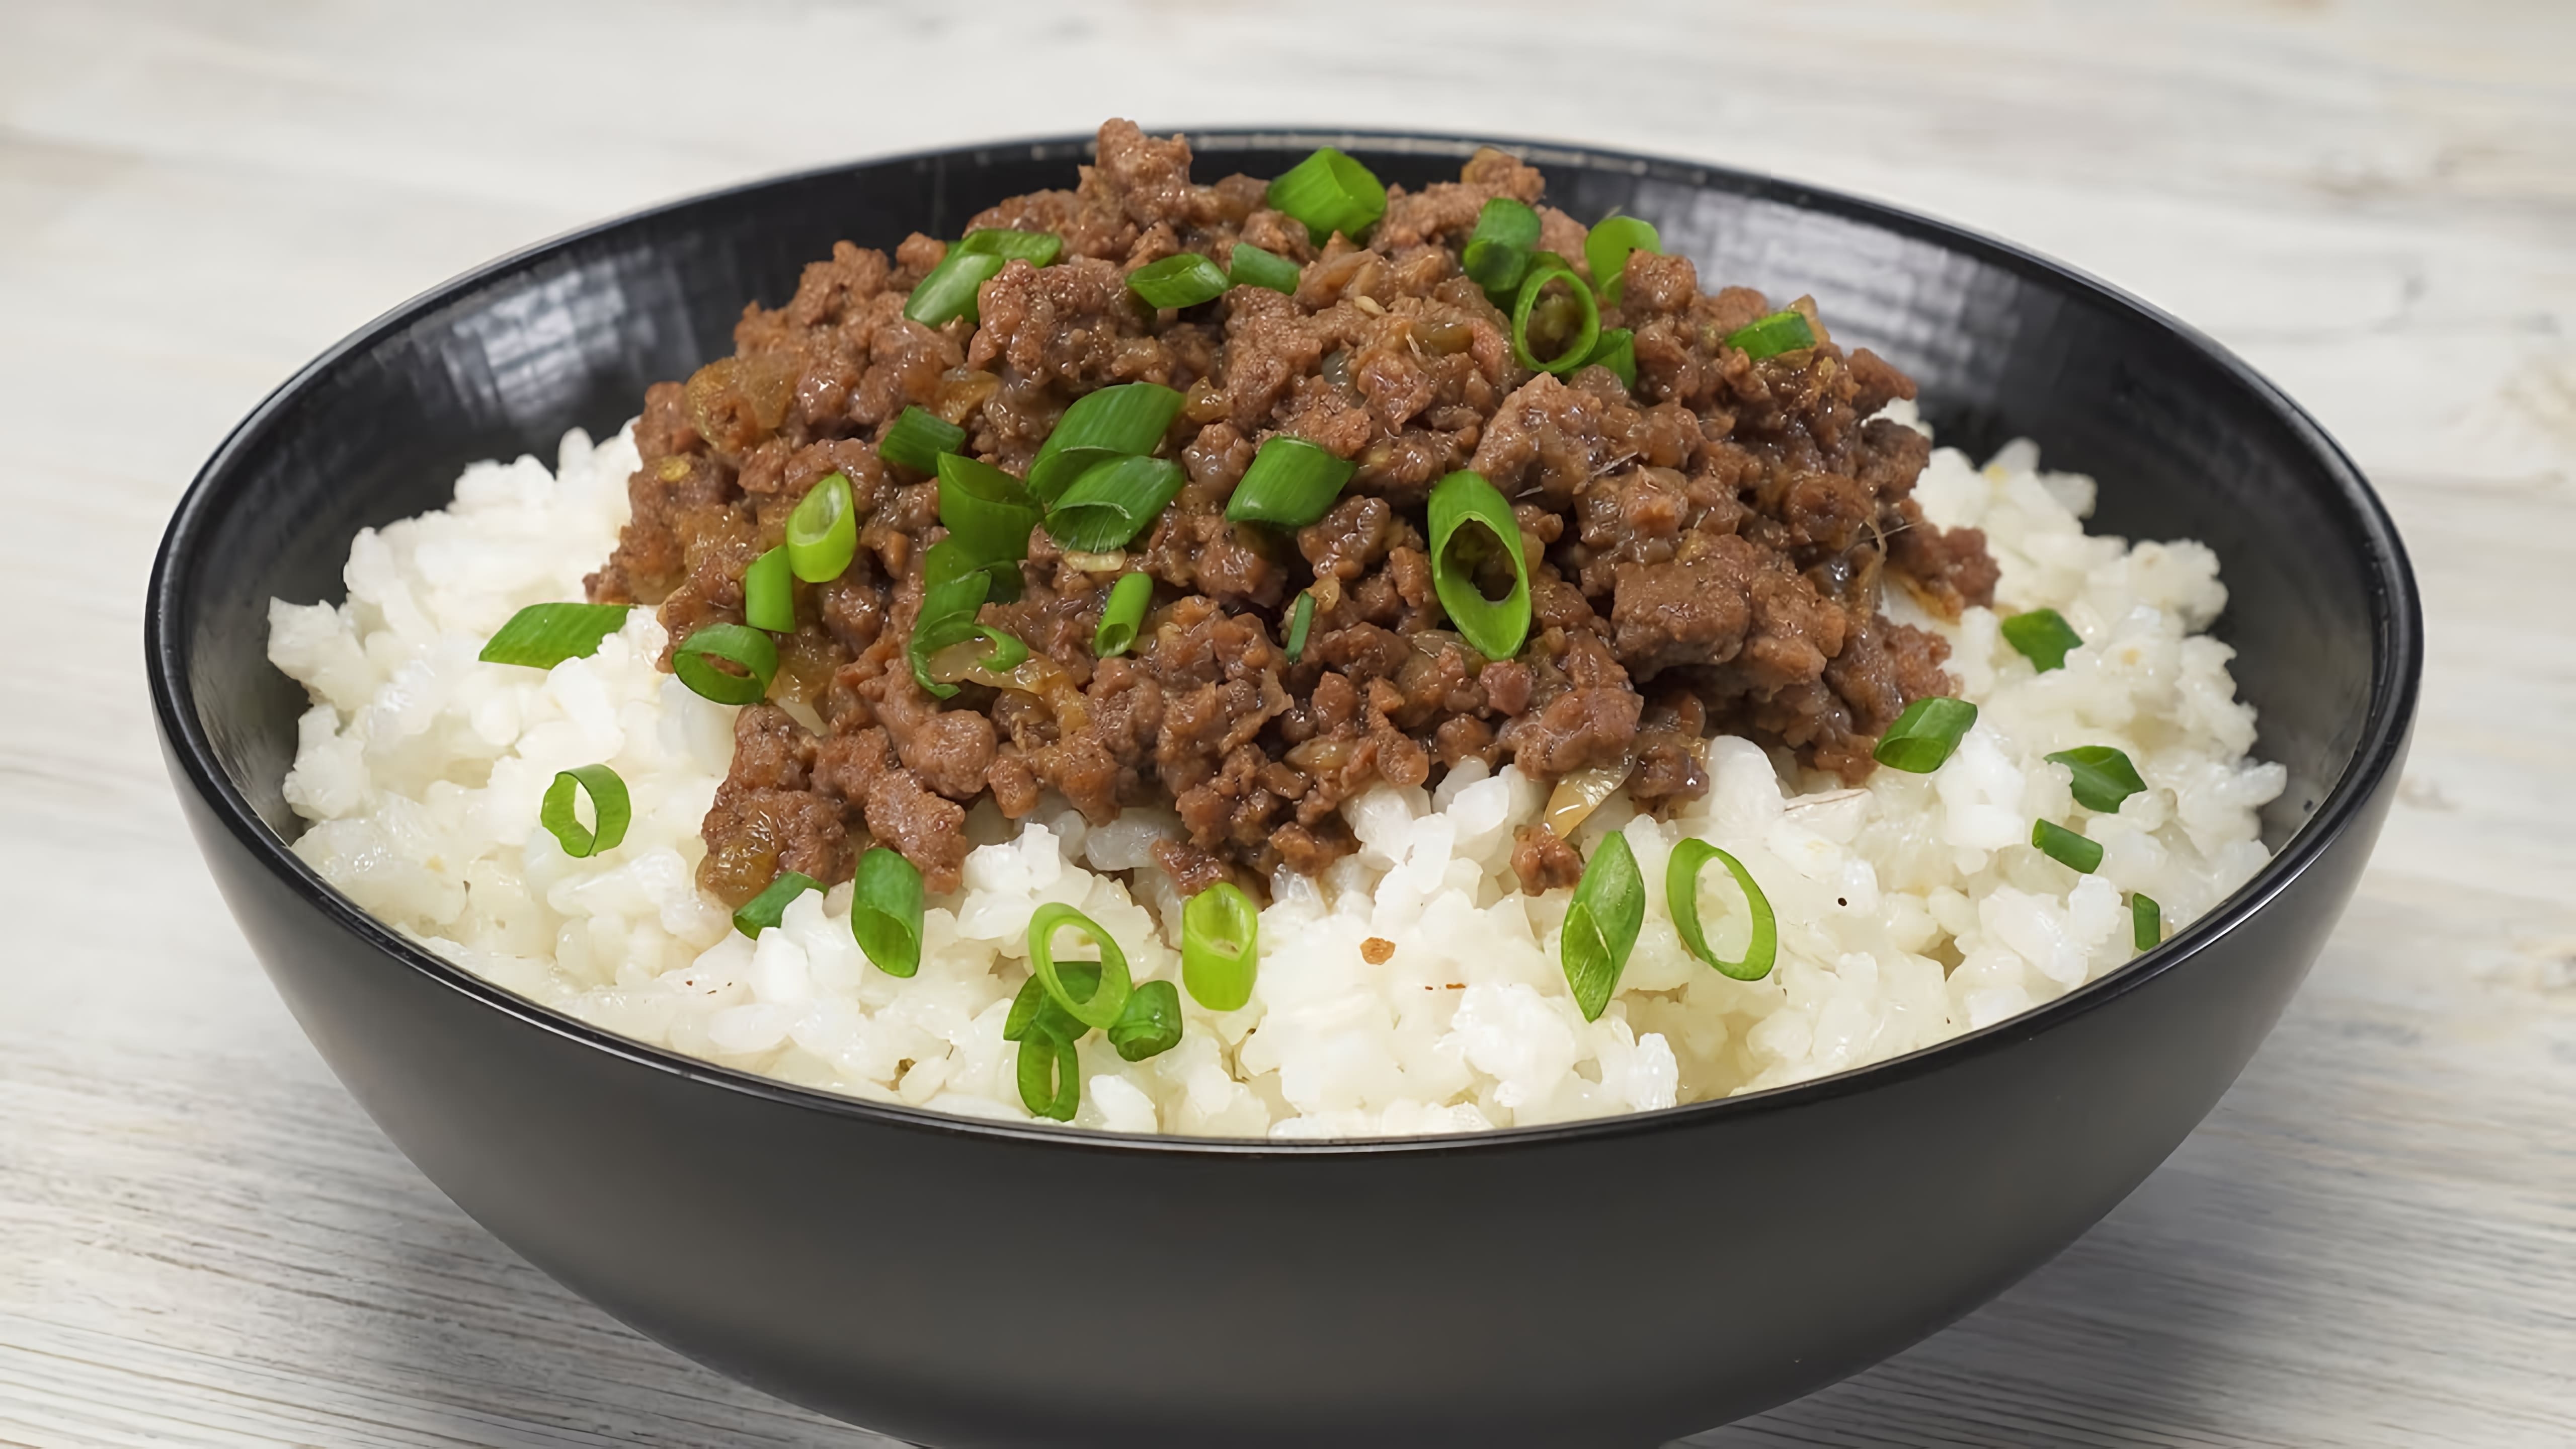 В данном видео демонстрируется рецепт приготовления риса с фаршем по-корейски